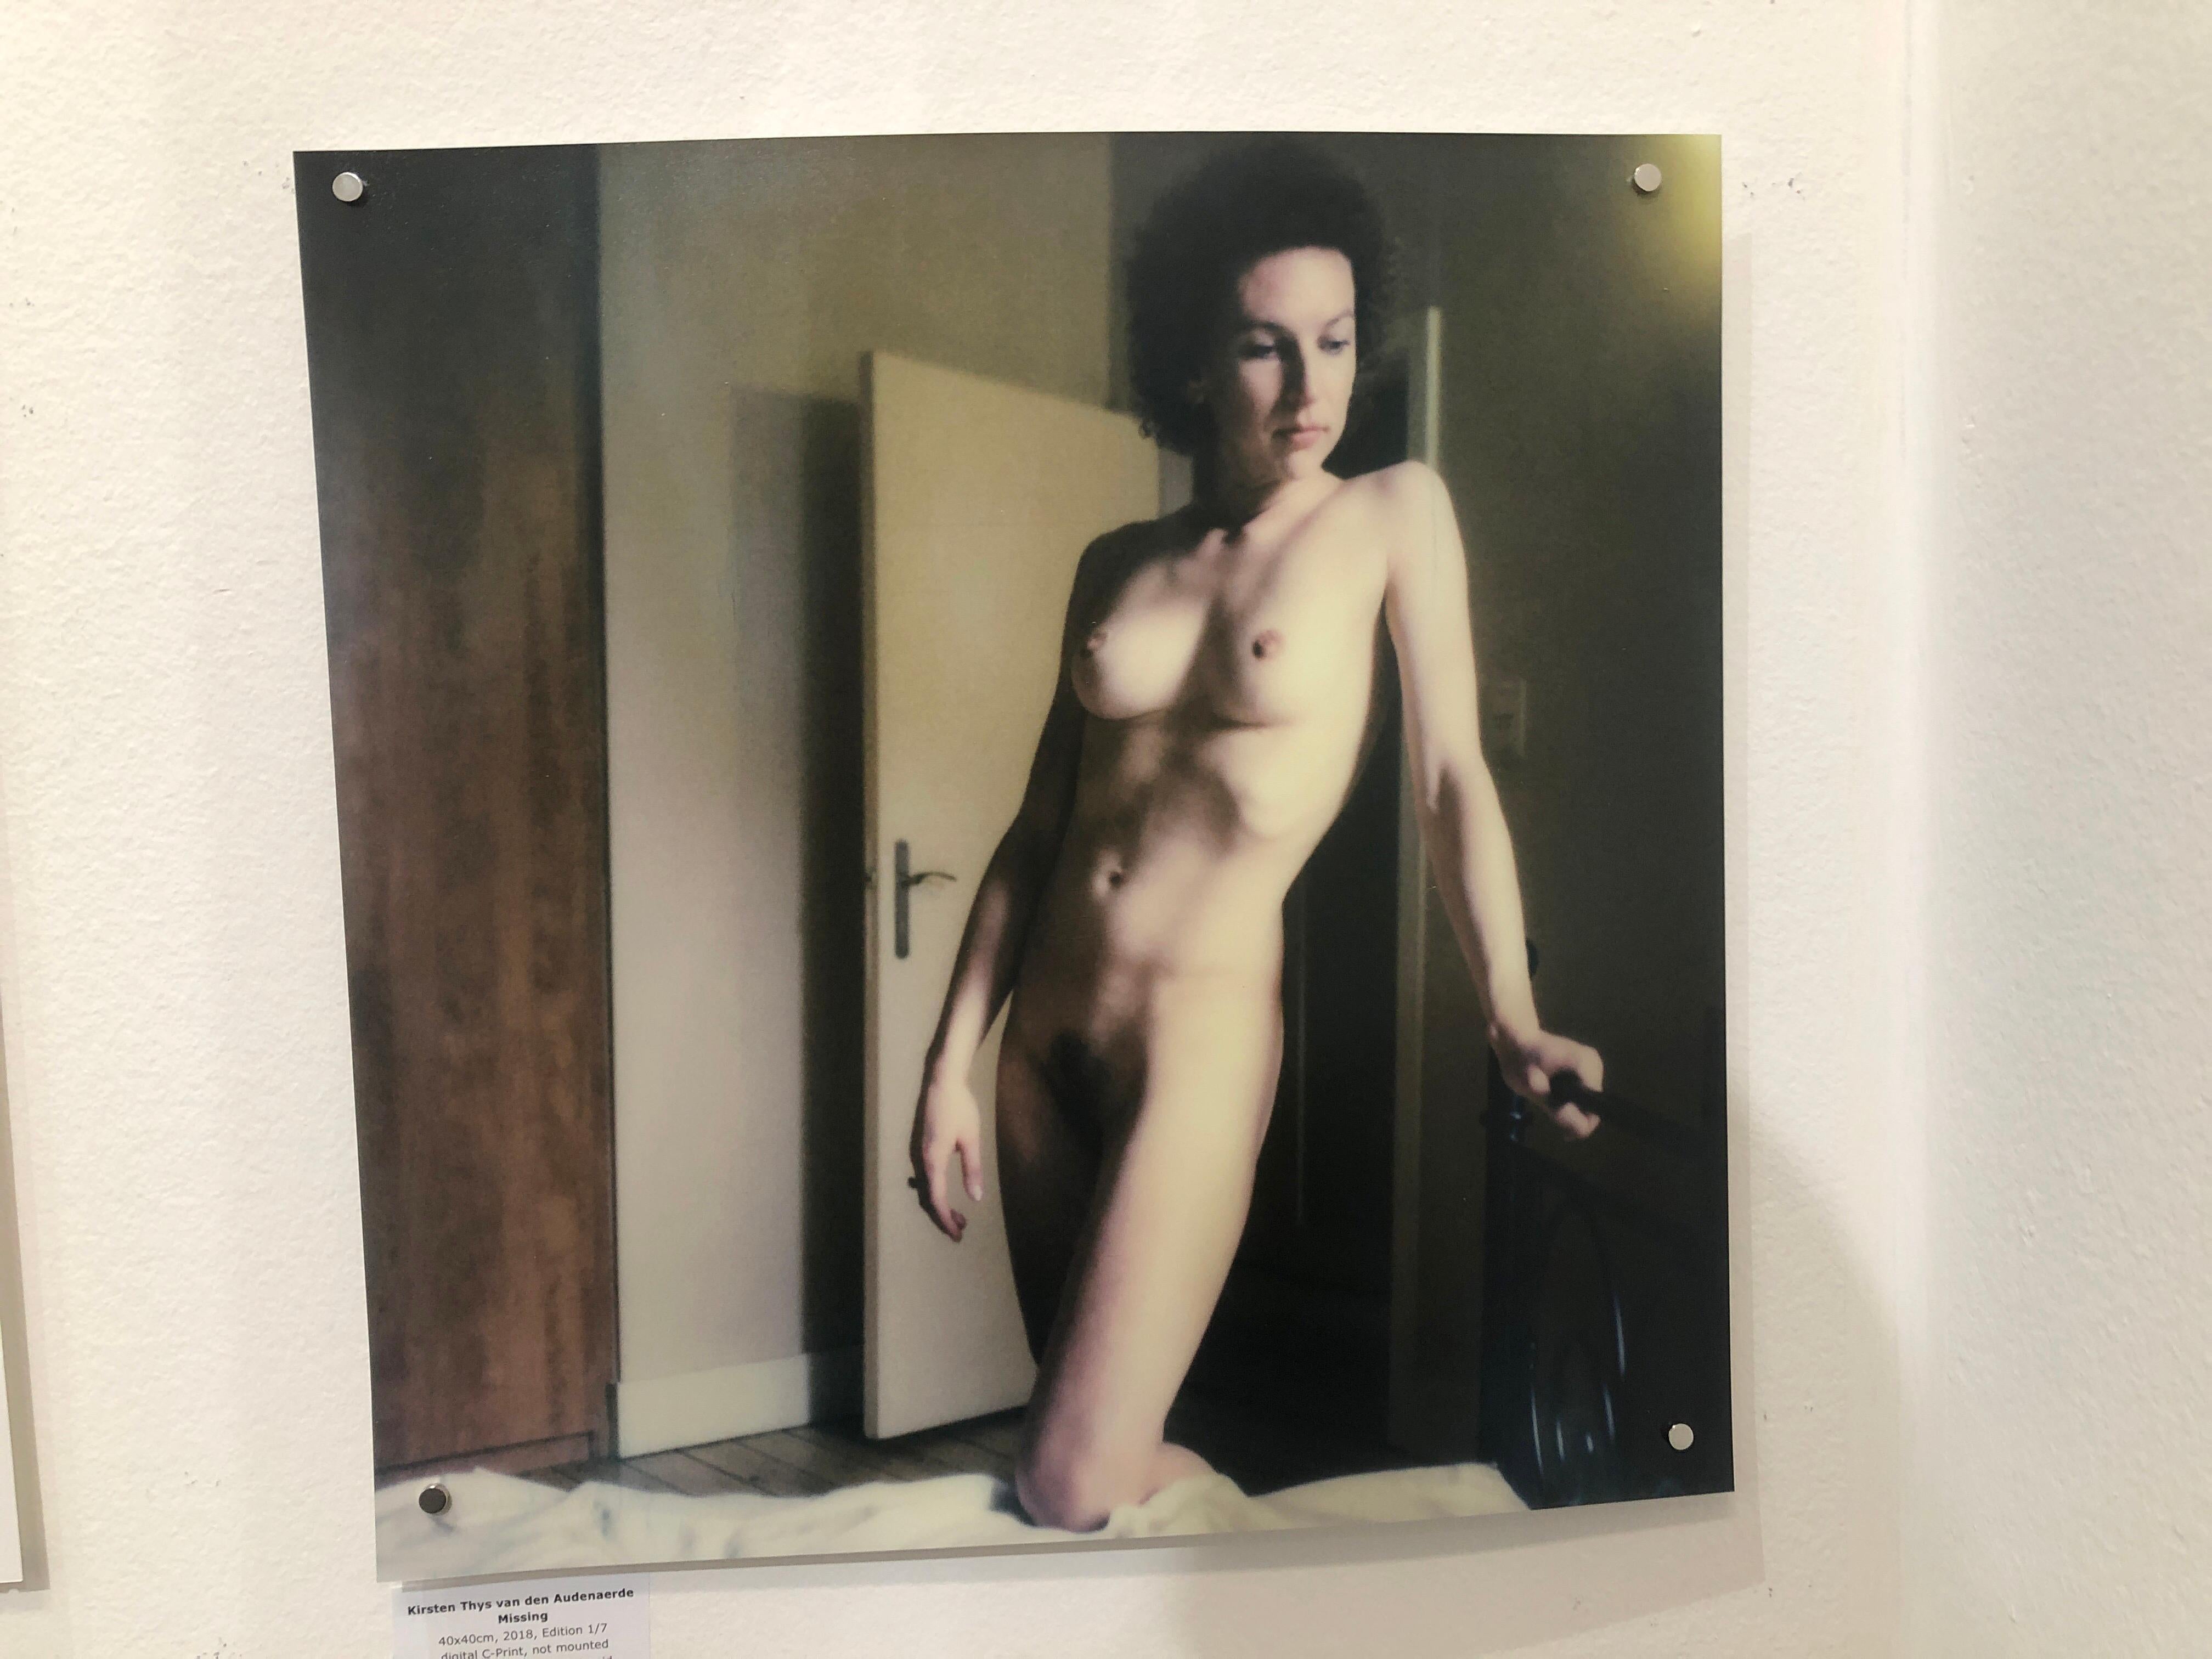 Missing, 40x40cm, 21e siècle, Polaroid, nu, femmes - Contemporain Photograph par Kirsten Thys van den Audenaerde